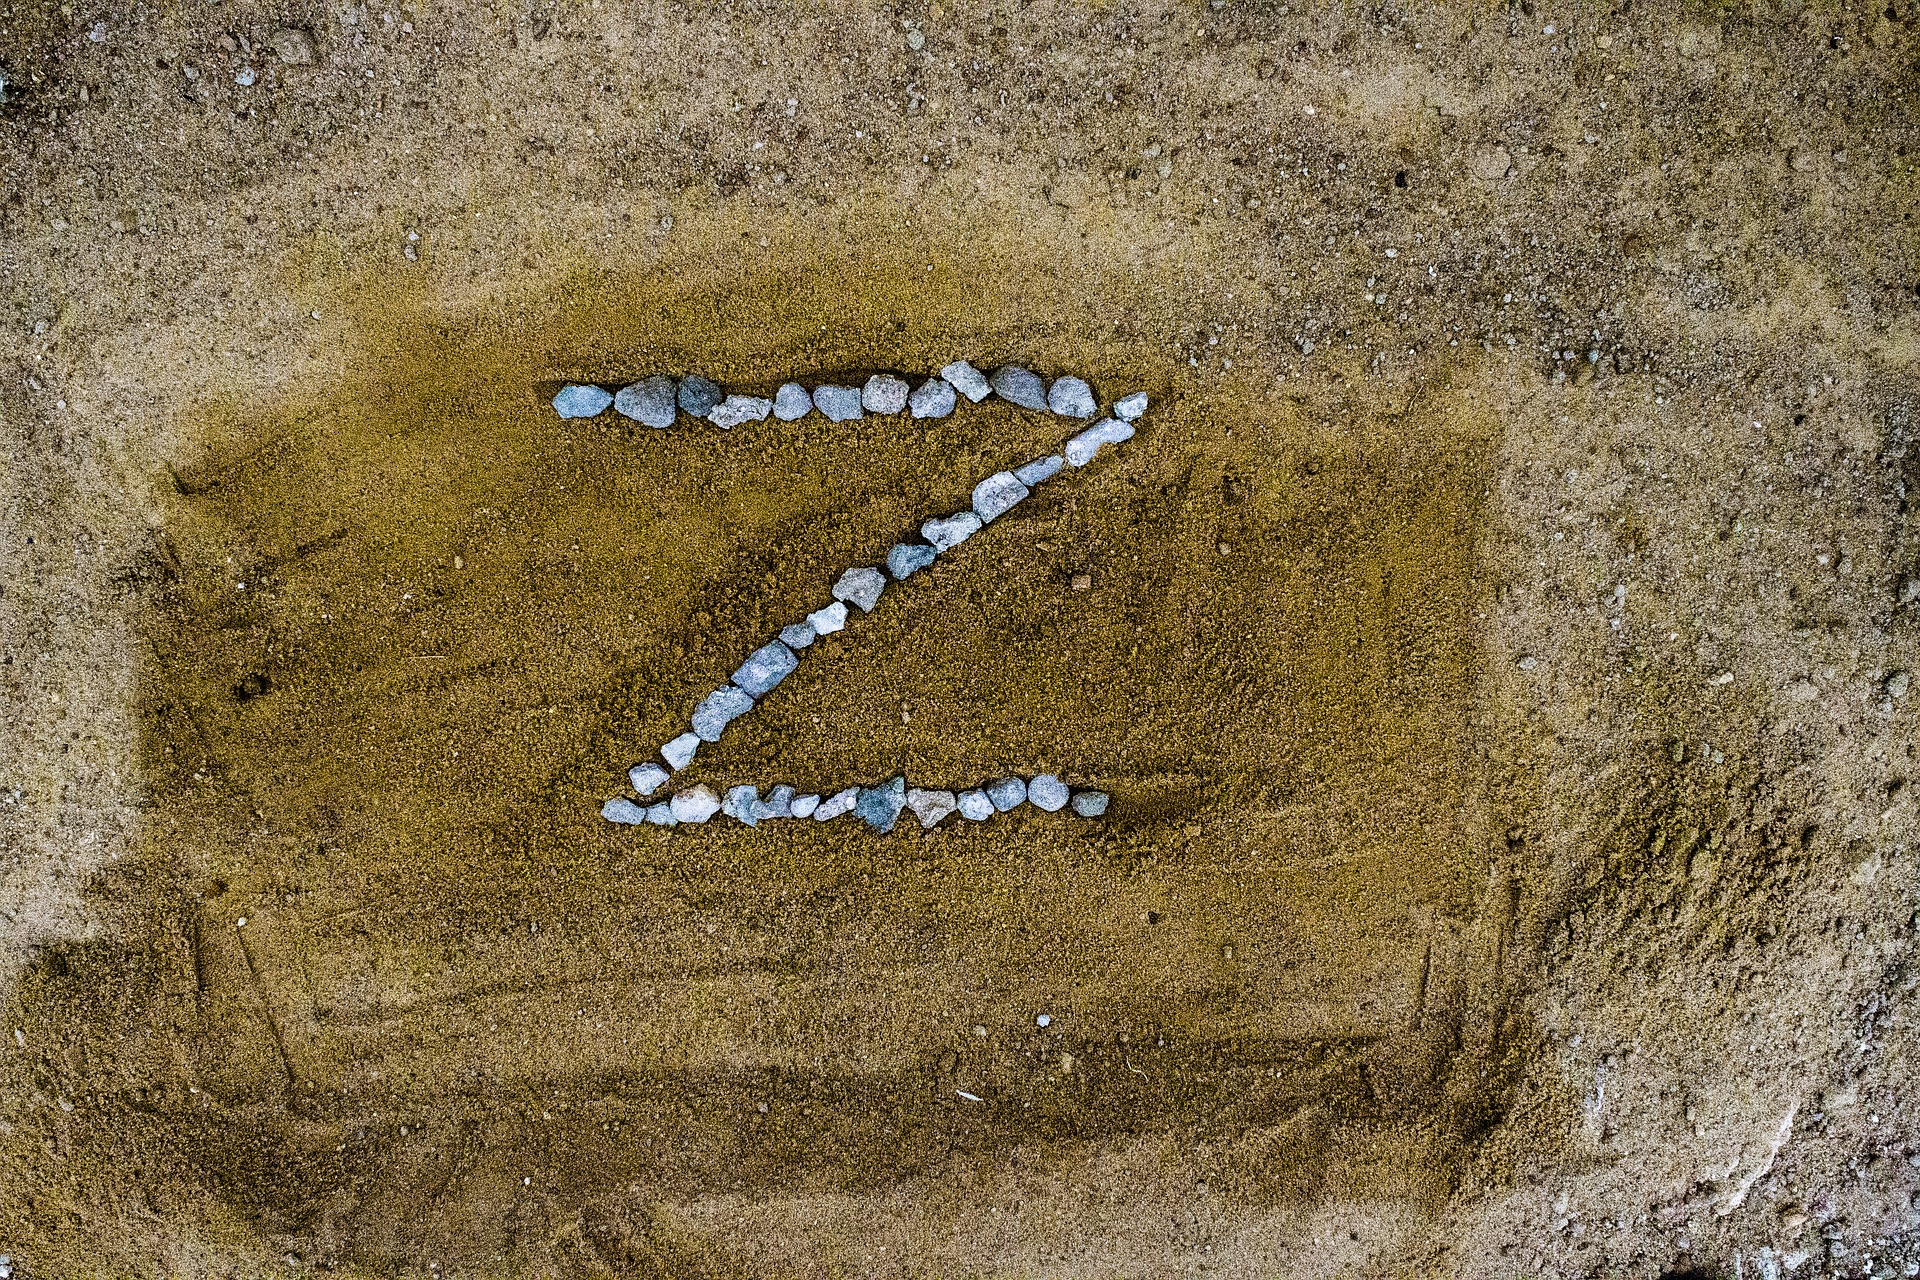 Z-Symbol